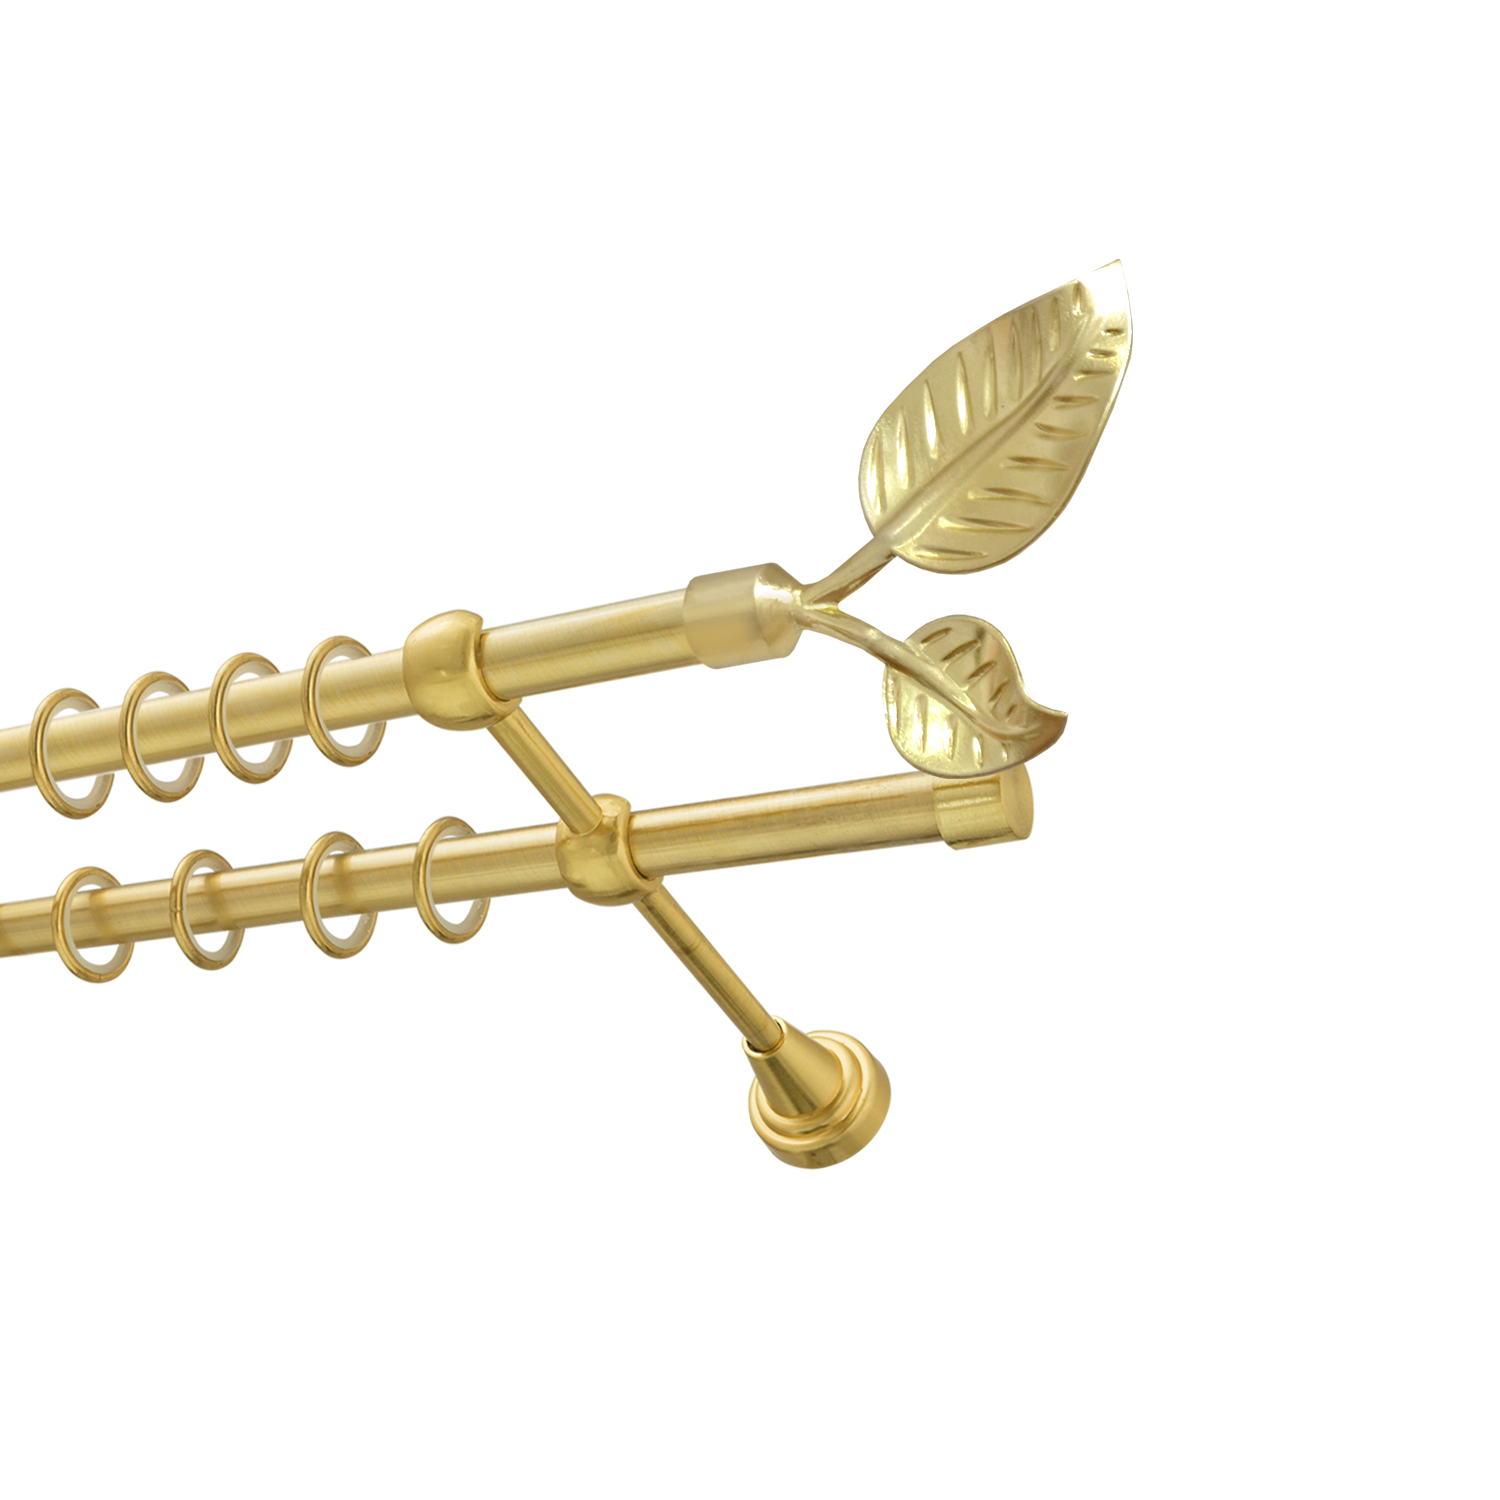 Металлический карниз для штор Тропик, двухрядный 16/16 мм, золото, гладкая штанга, длина 180 см - фото Wikidecor.ru